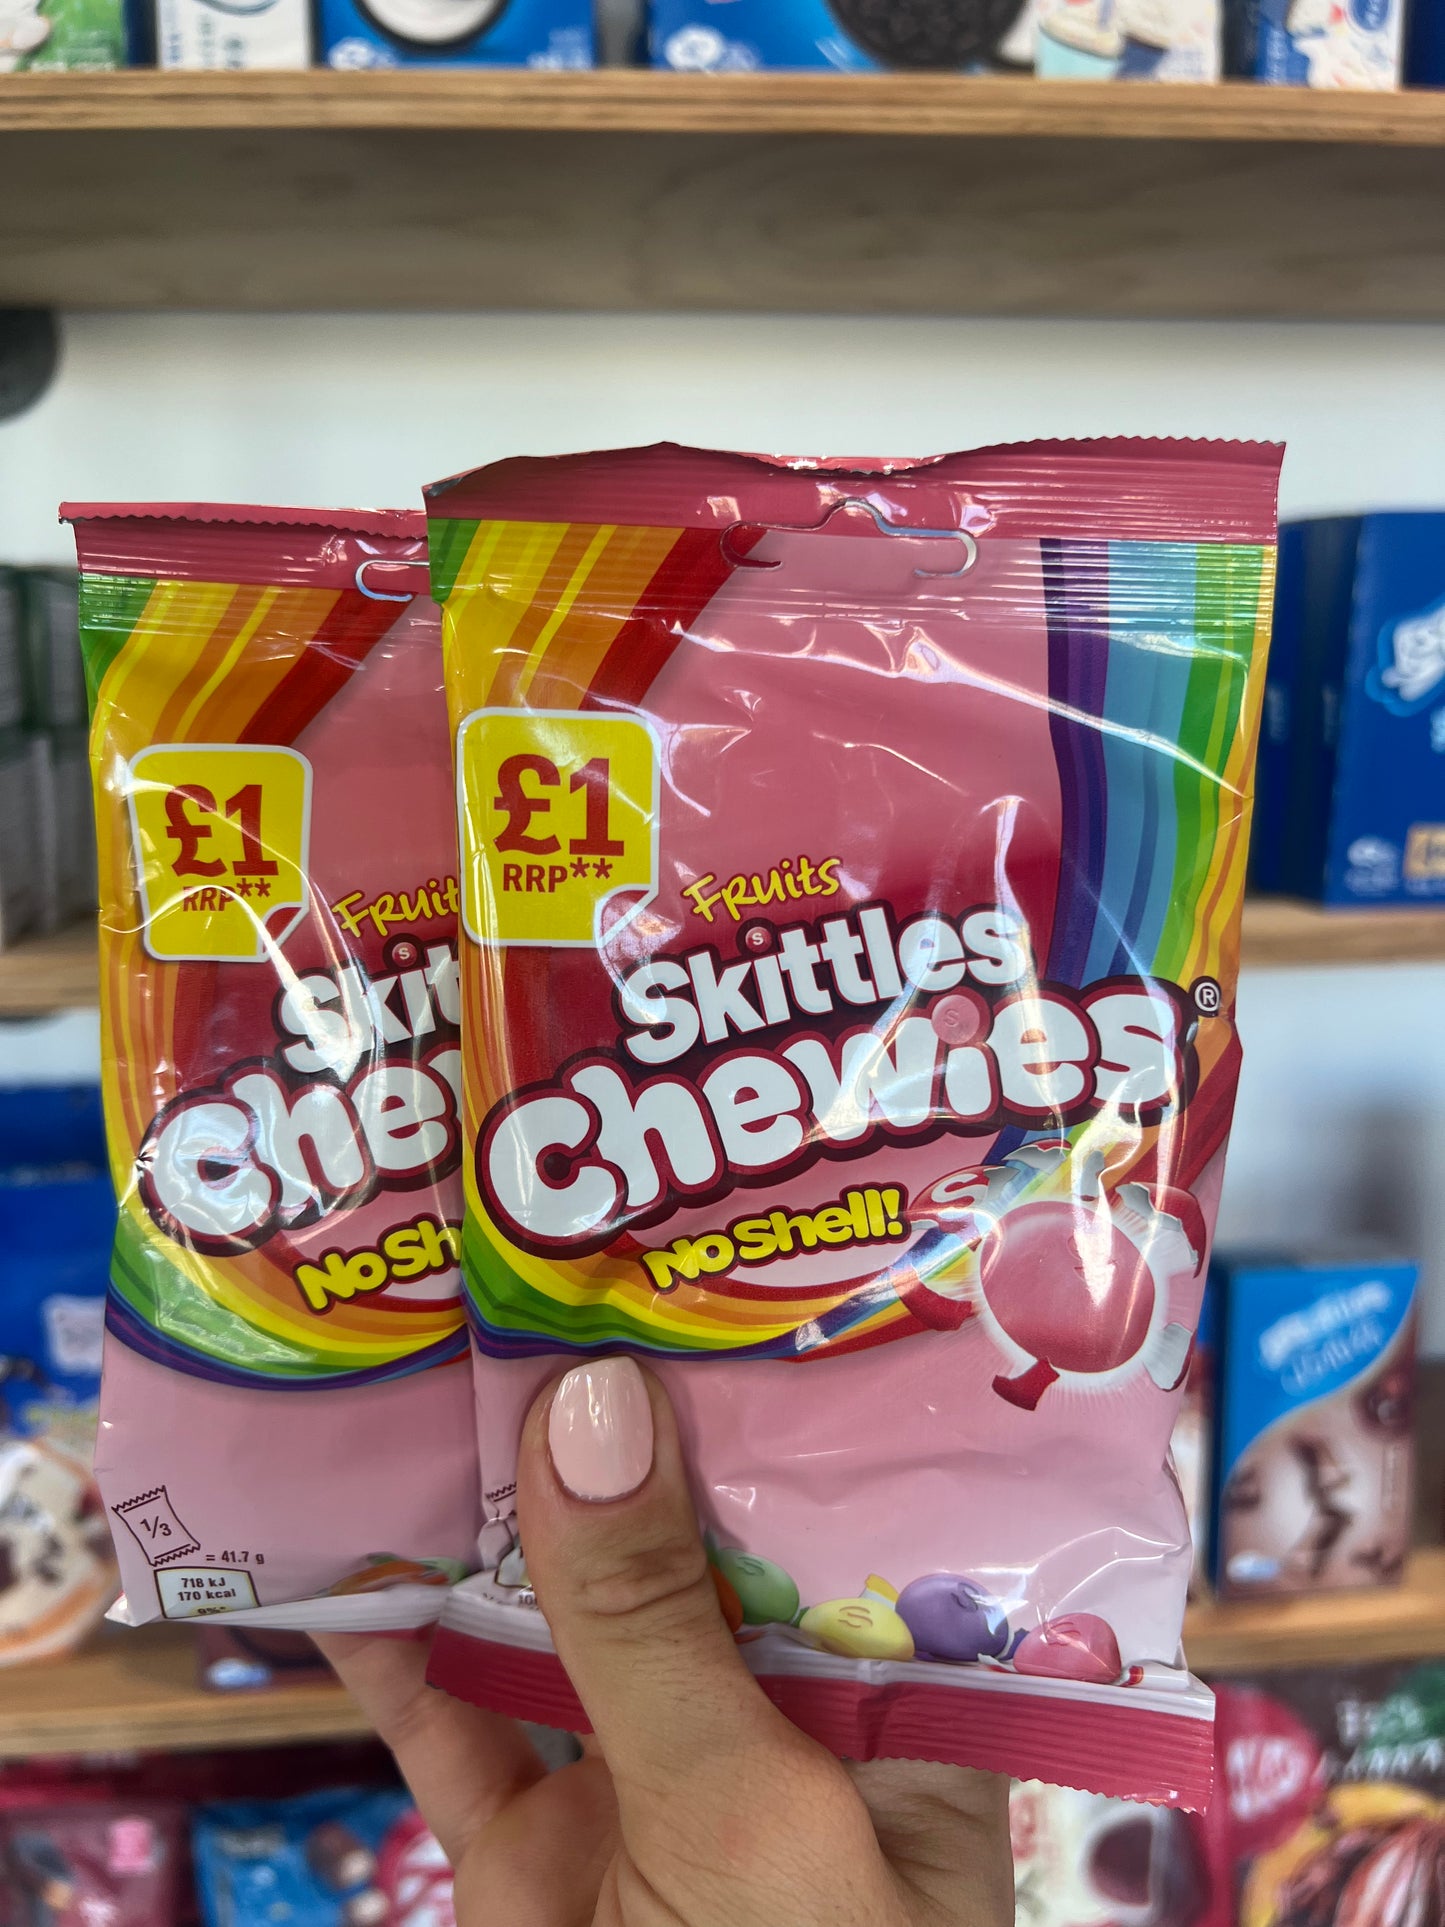 Skittles Chewies - No shell